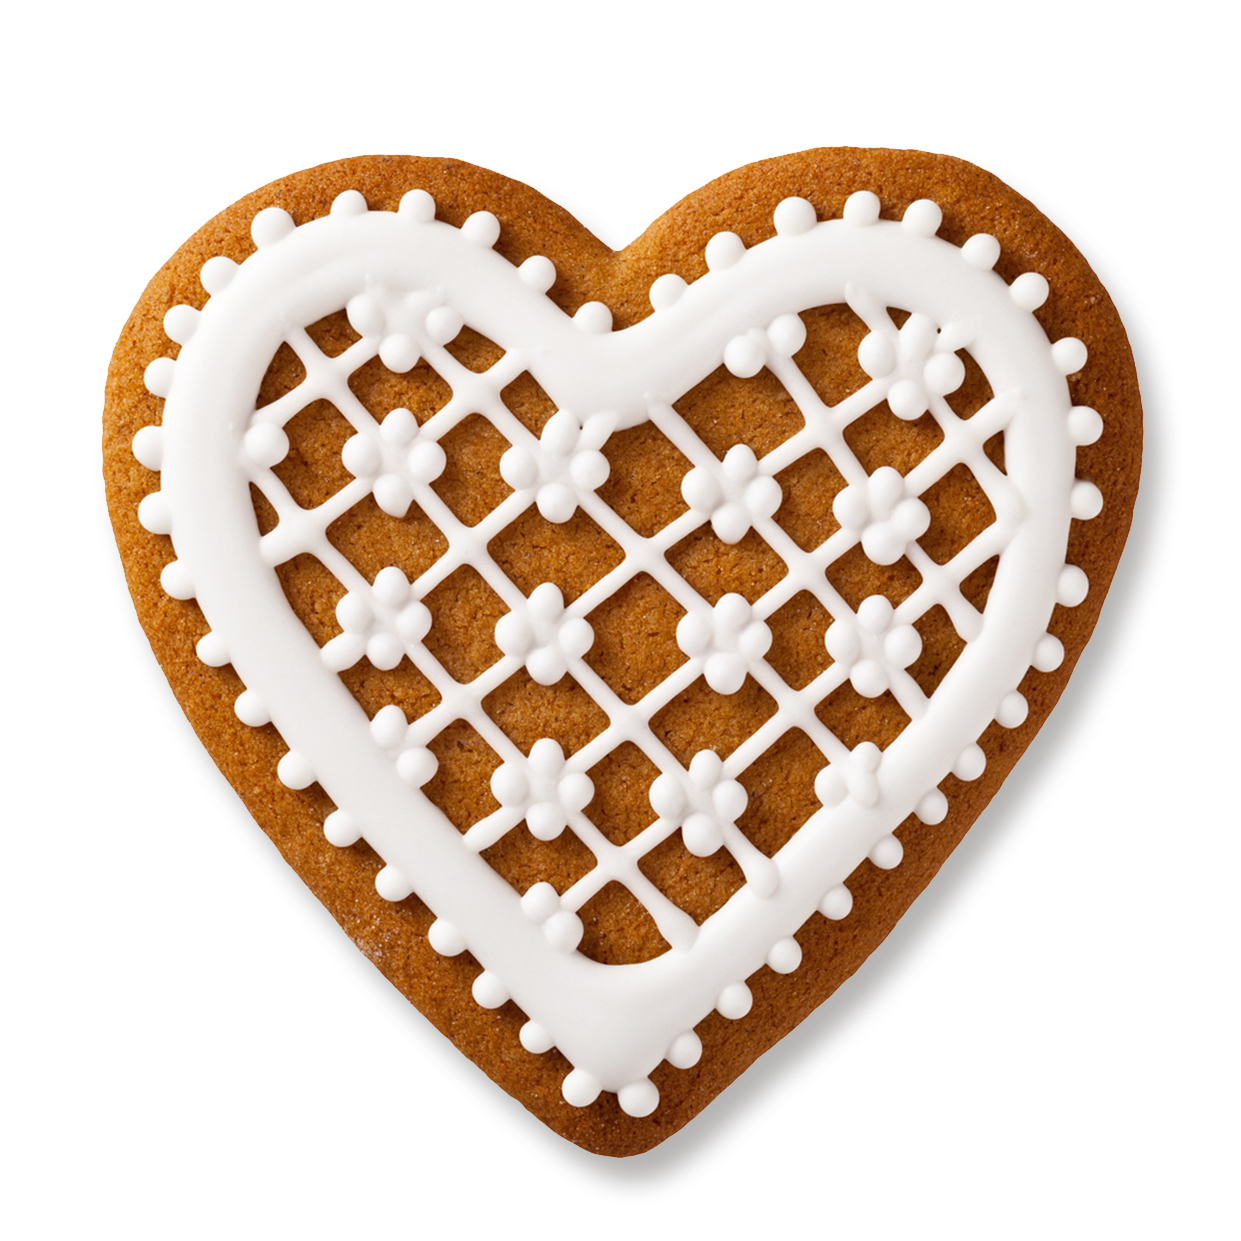 Gingerbread Heart - sent on November 21st, 2022